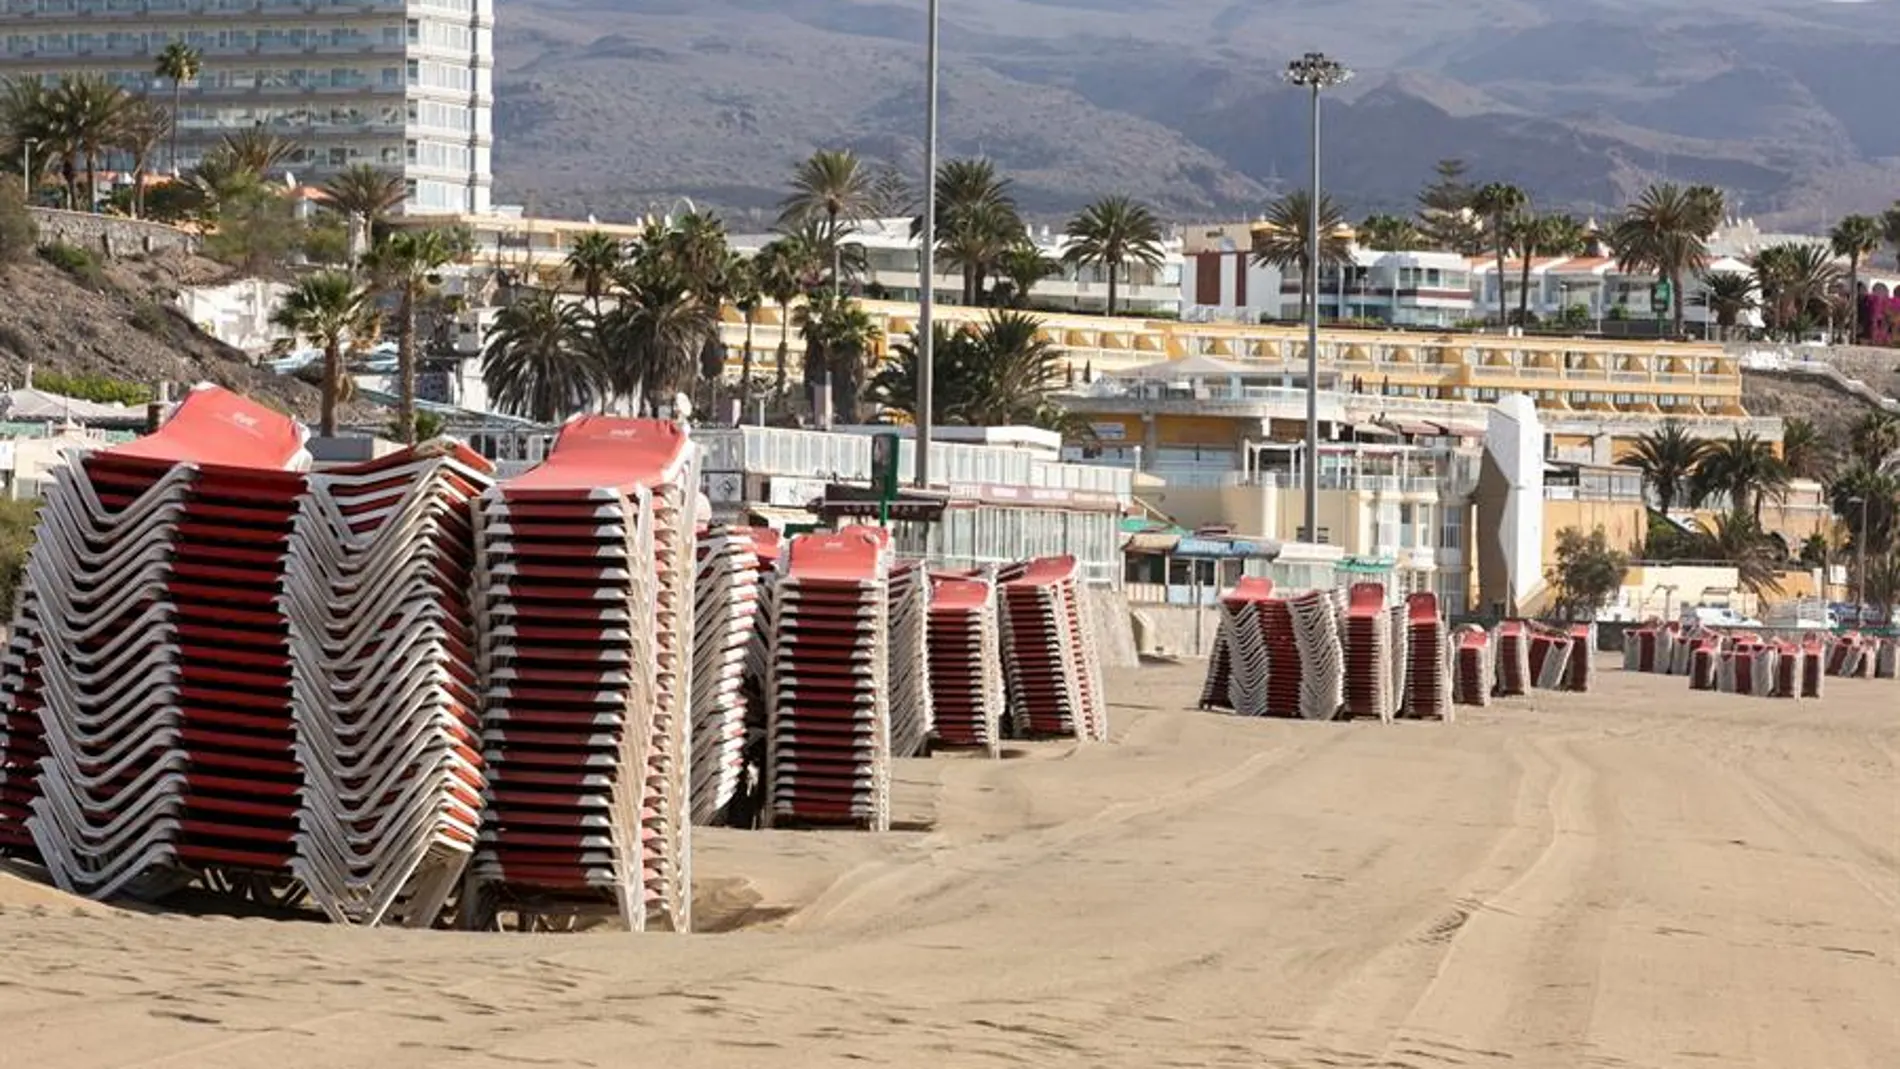 Hoteles cerrados y tumbonas recogidas en Playa del Inglés